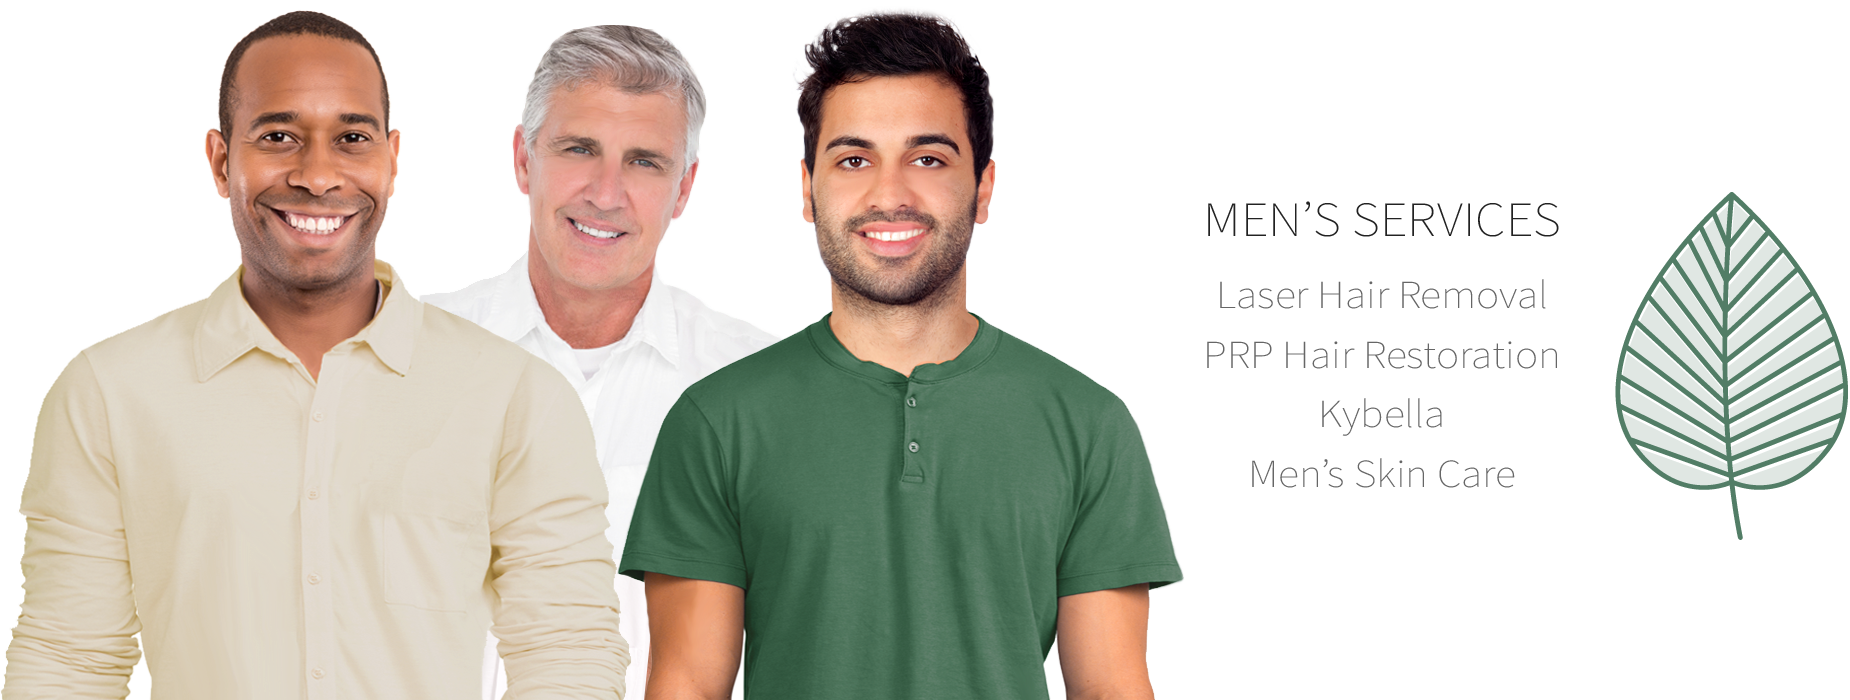 Men's Med Spa Services